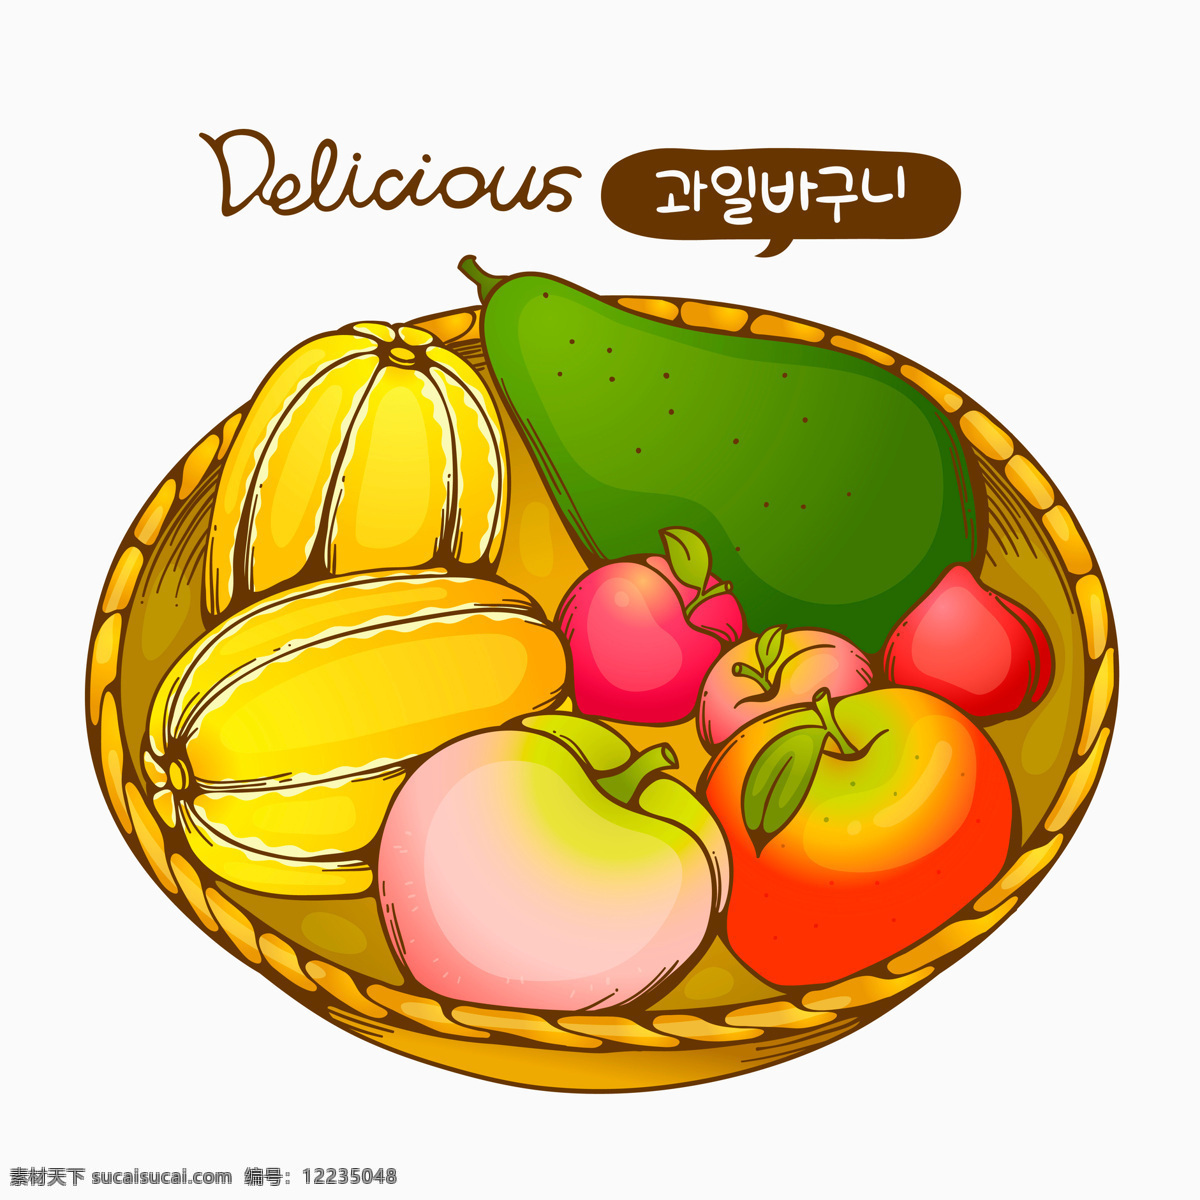 插画 动漫动画 果实 绿色食品 漫画 苹果 水果设计素材 水果模板下载 水果 桃子 水蜜桃 香瓜 插画集